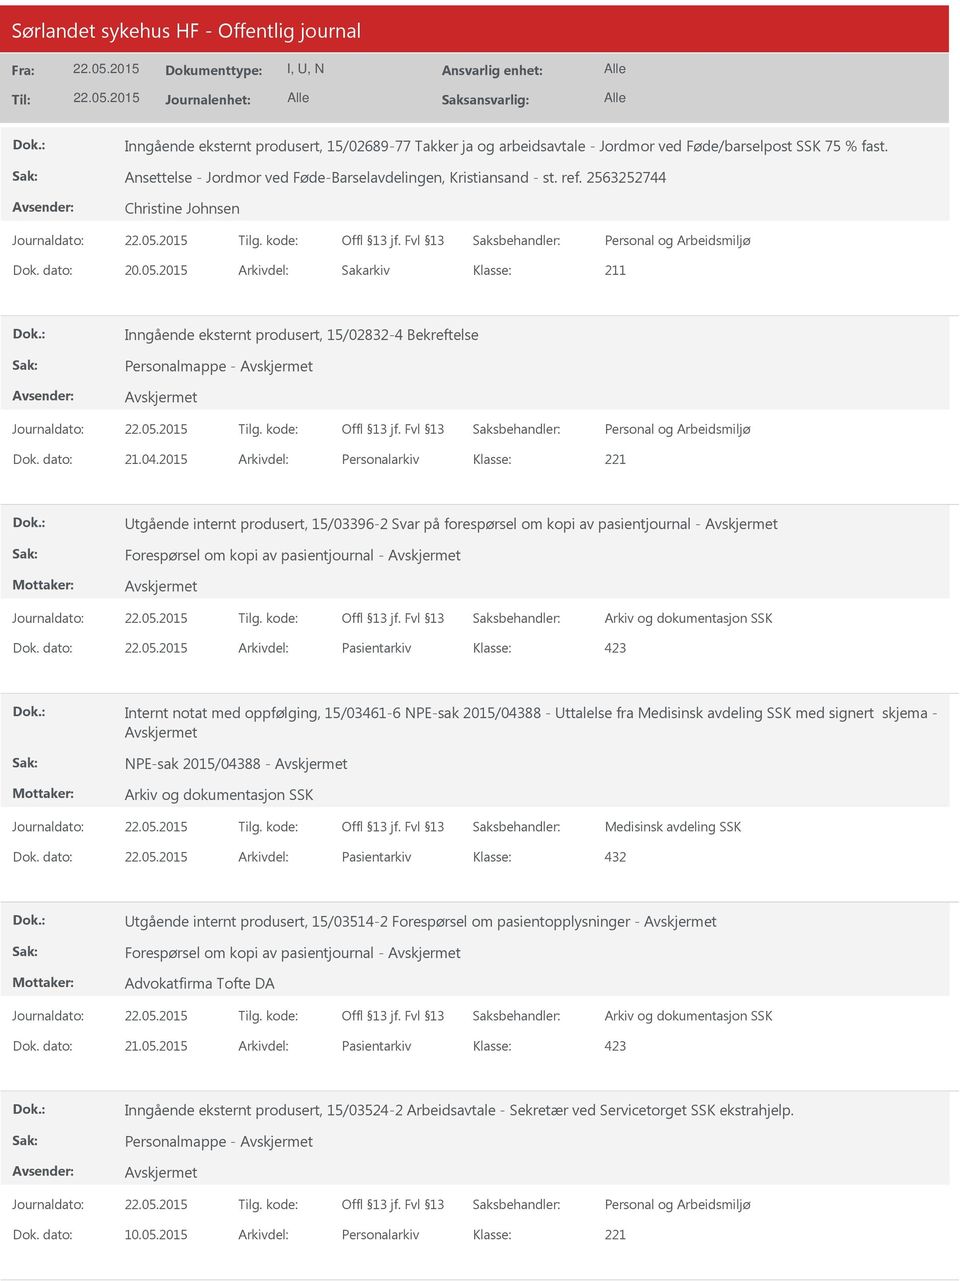 2015 Arkivdel: Personalarkiv tgående internt produsert, 15/03396-2 Svar på forespørsel om kopi av pasientjournal - Forespørsel om kopi av pasientjournal - Dok.